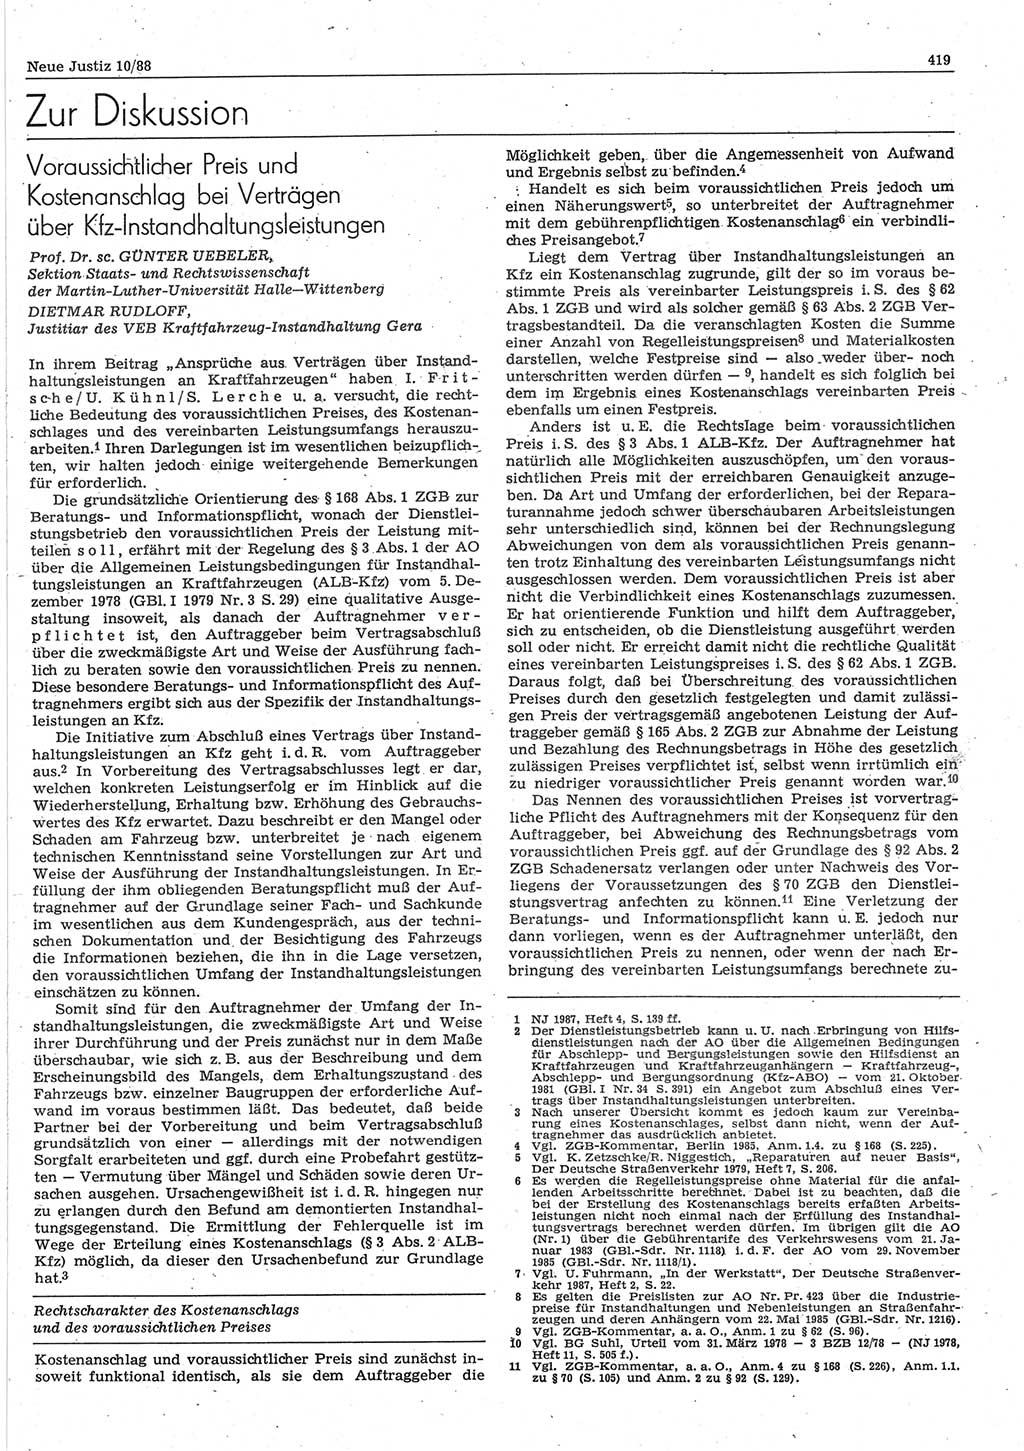 Neue Justiz (NJ), Zeitschrift für sozialistisches Recht und Gesetzlichkeit [Deutsche Demokratische Republik (DDR)], 42. Jahrgang 1988, Seite 419 (NJ DDR 1988, S. 419)